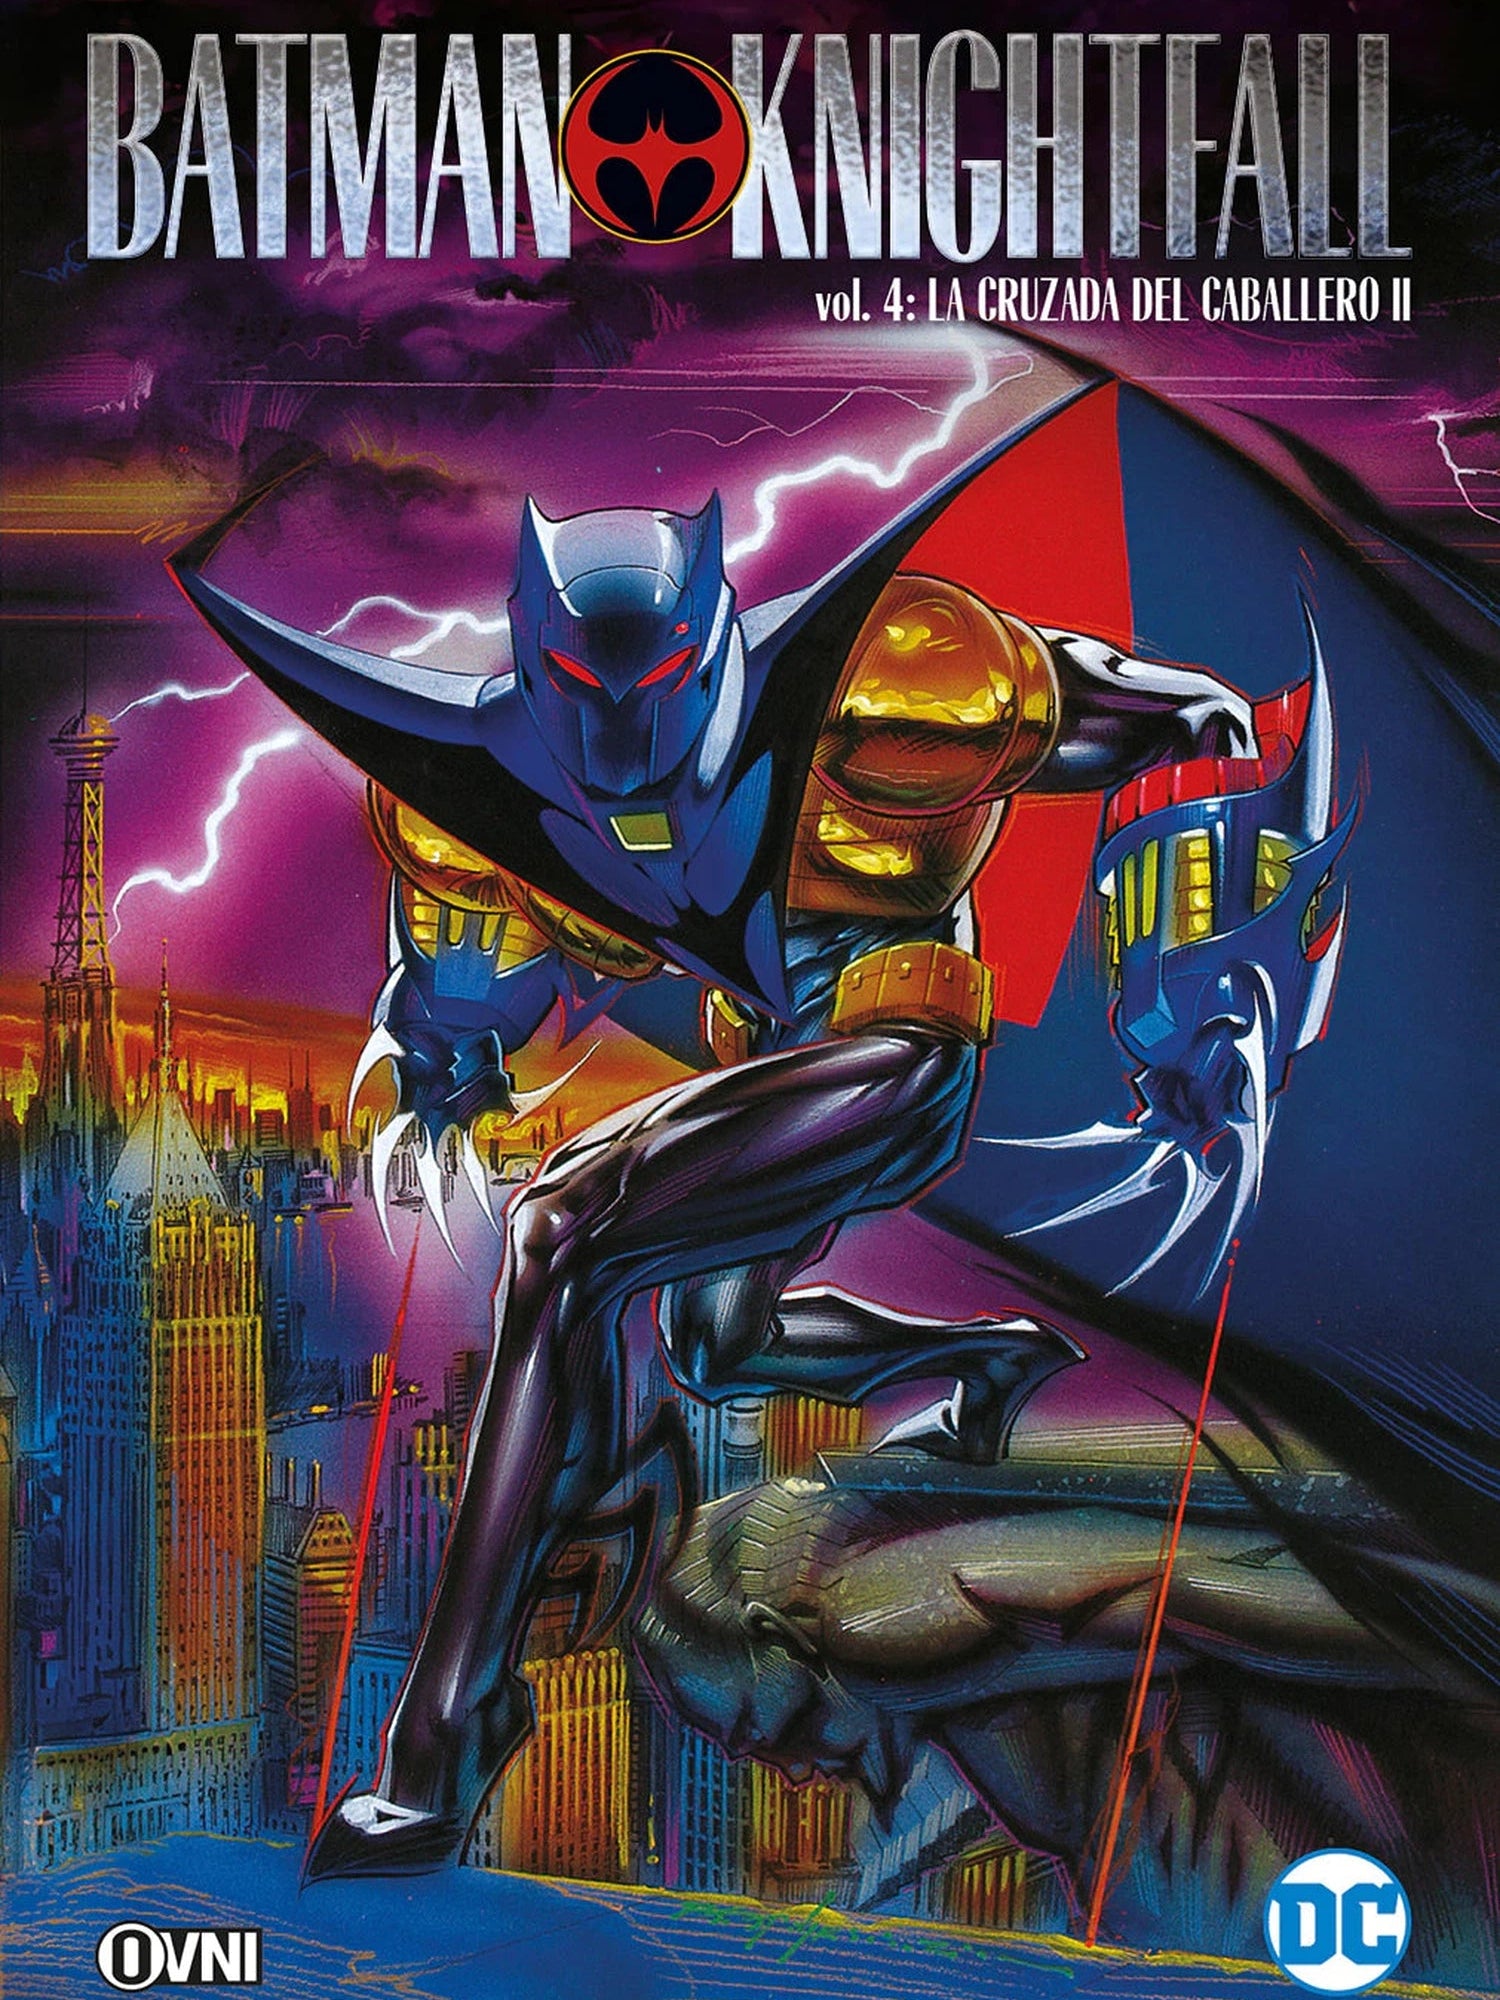 Batman: Knightfall Vol. 4: La Cruzada Del Caballero ll OVNI Press ENcuadrocomics